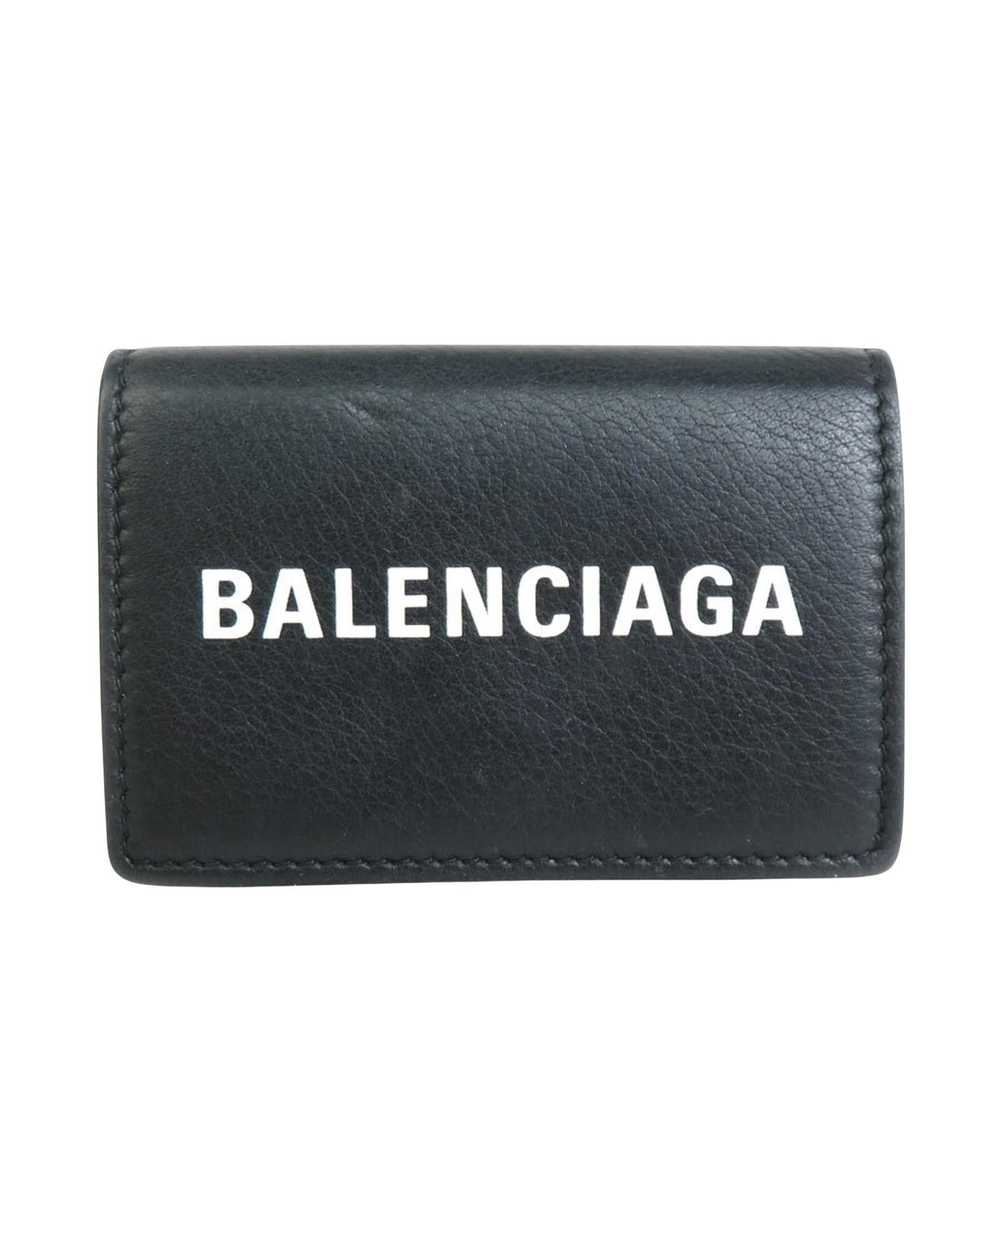 Balenciaga Cash Mini Wallet - image 1